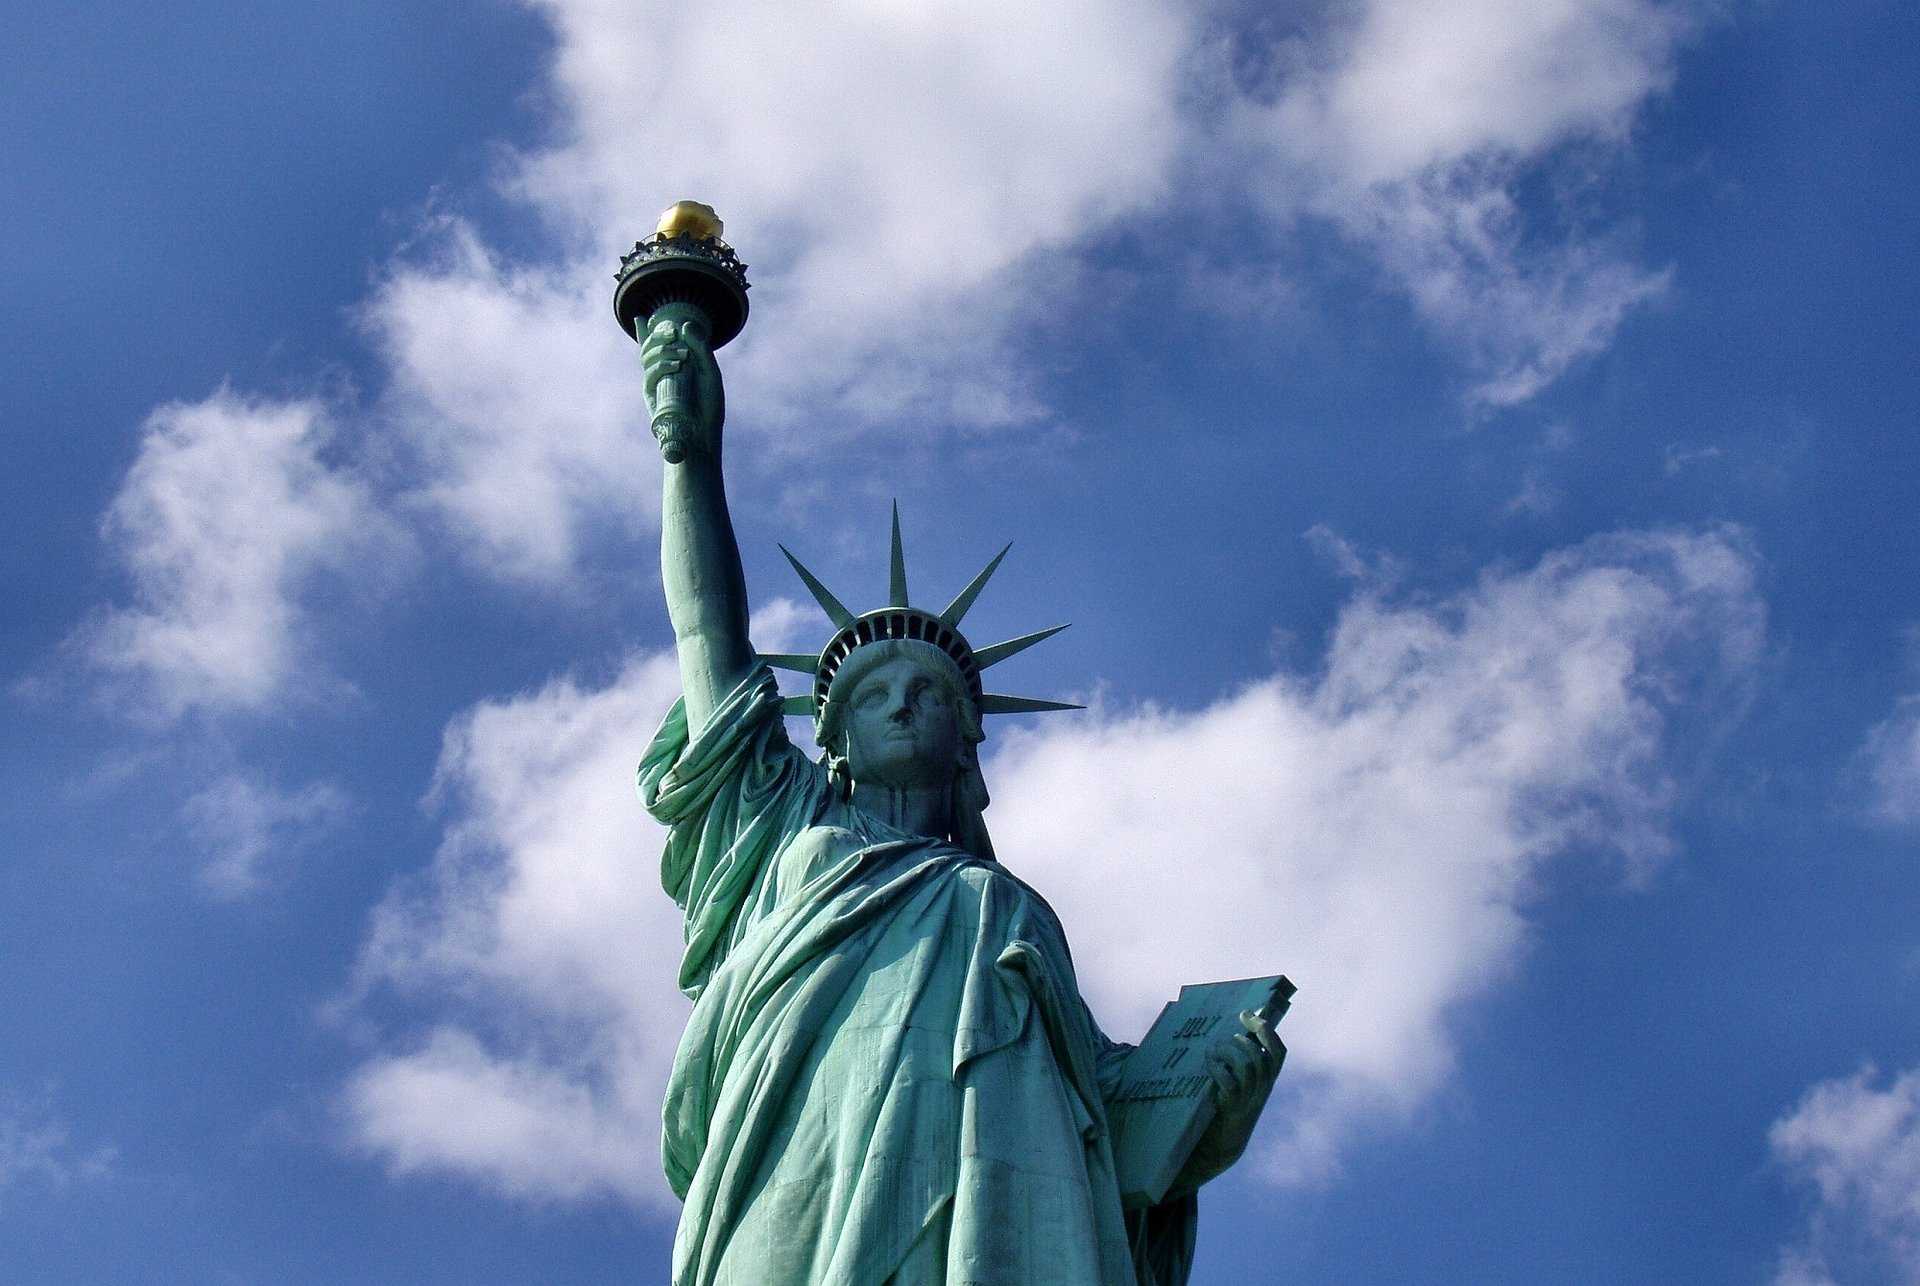 פסל החירות ניו יורק המדריך השלם - כרטיסים, טיפים חשובים ועוד!